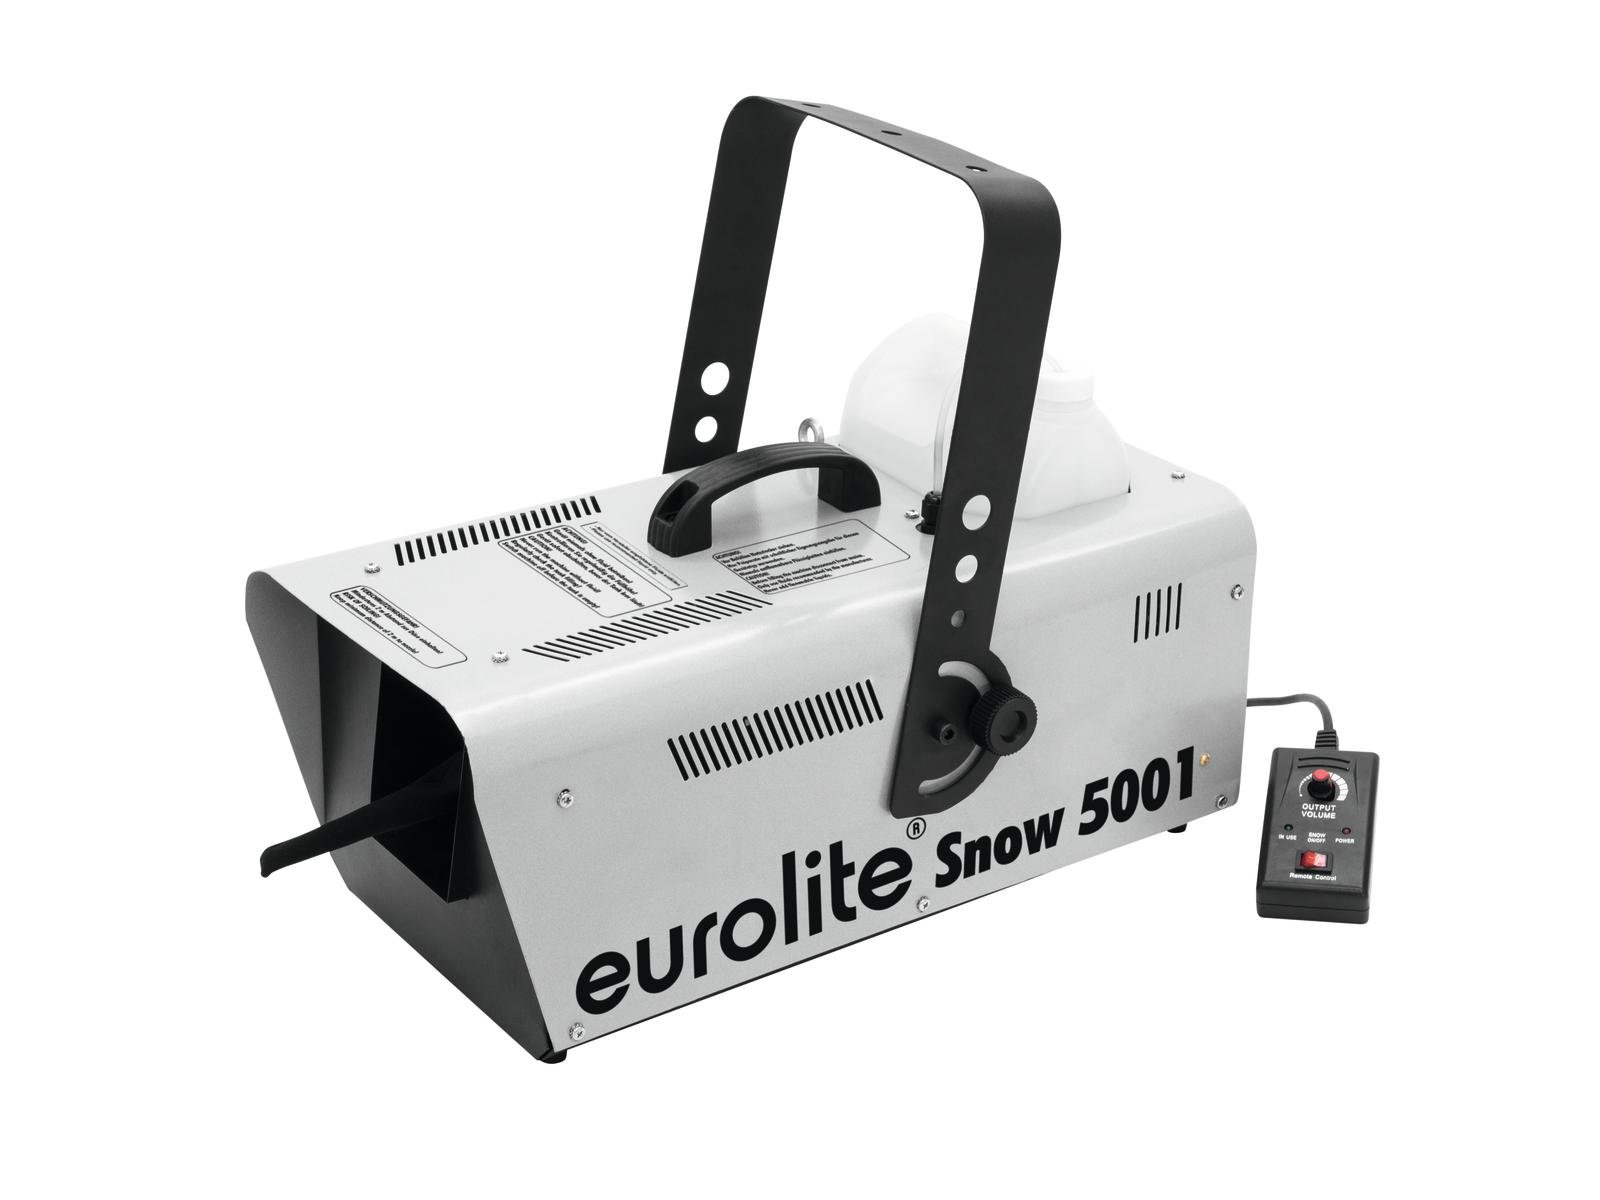 Billede af Eurolite Snow 5001 Snemaskine